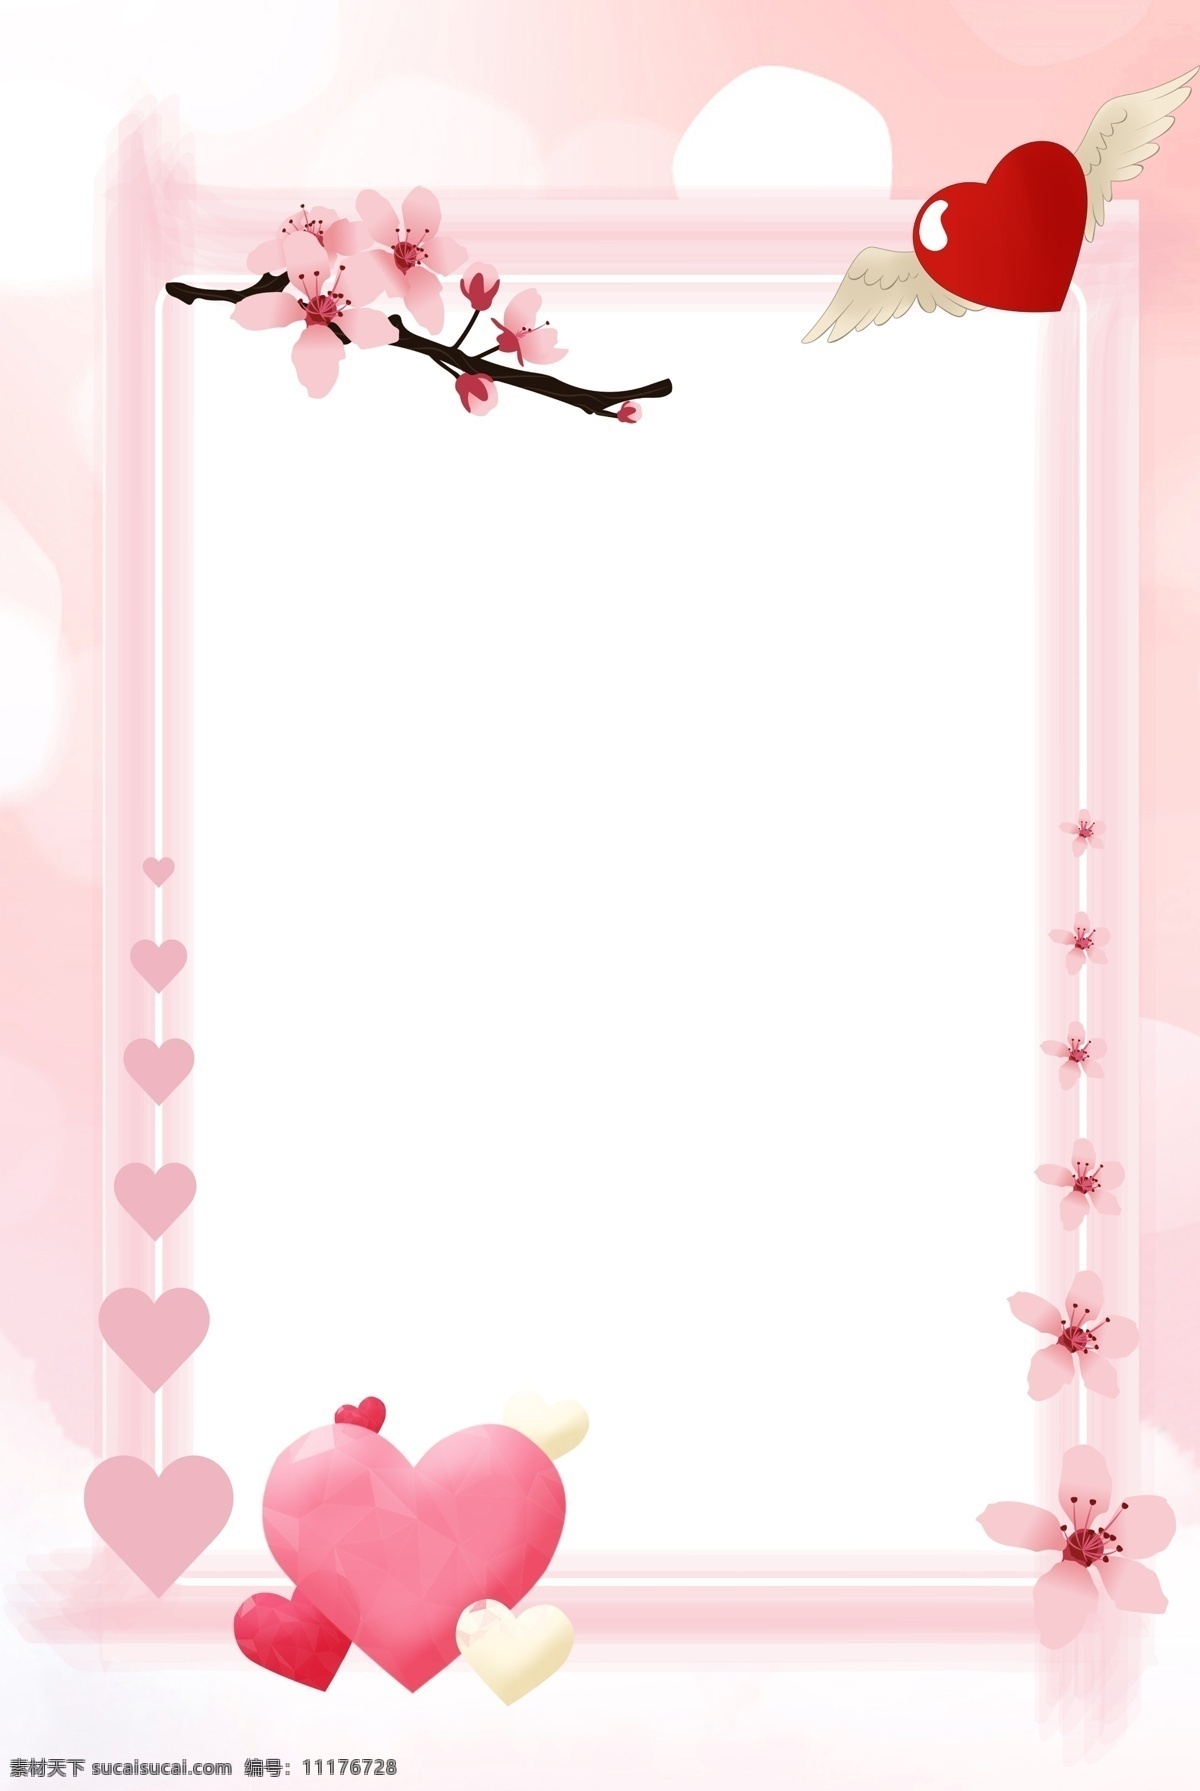 七夕 粉色 边框 简约 背景 唯美 爱情 爱 爱心 花朵 手绘 水彩 情感 节日